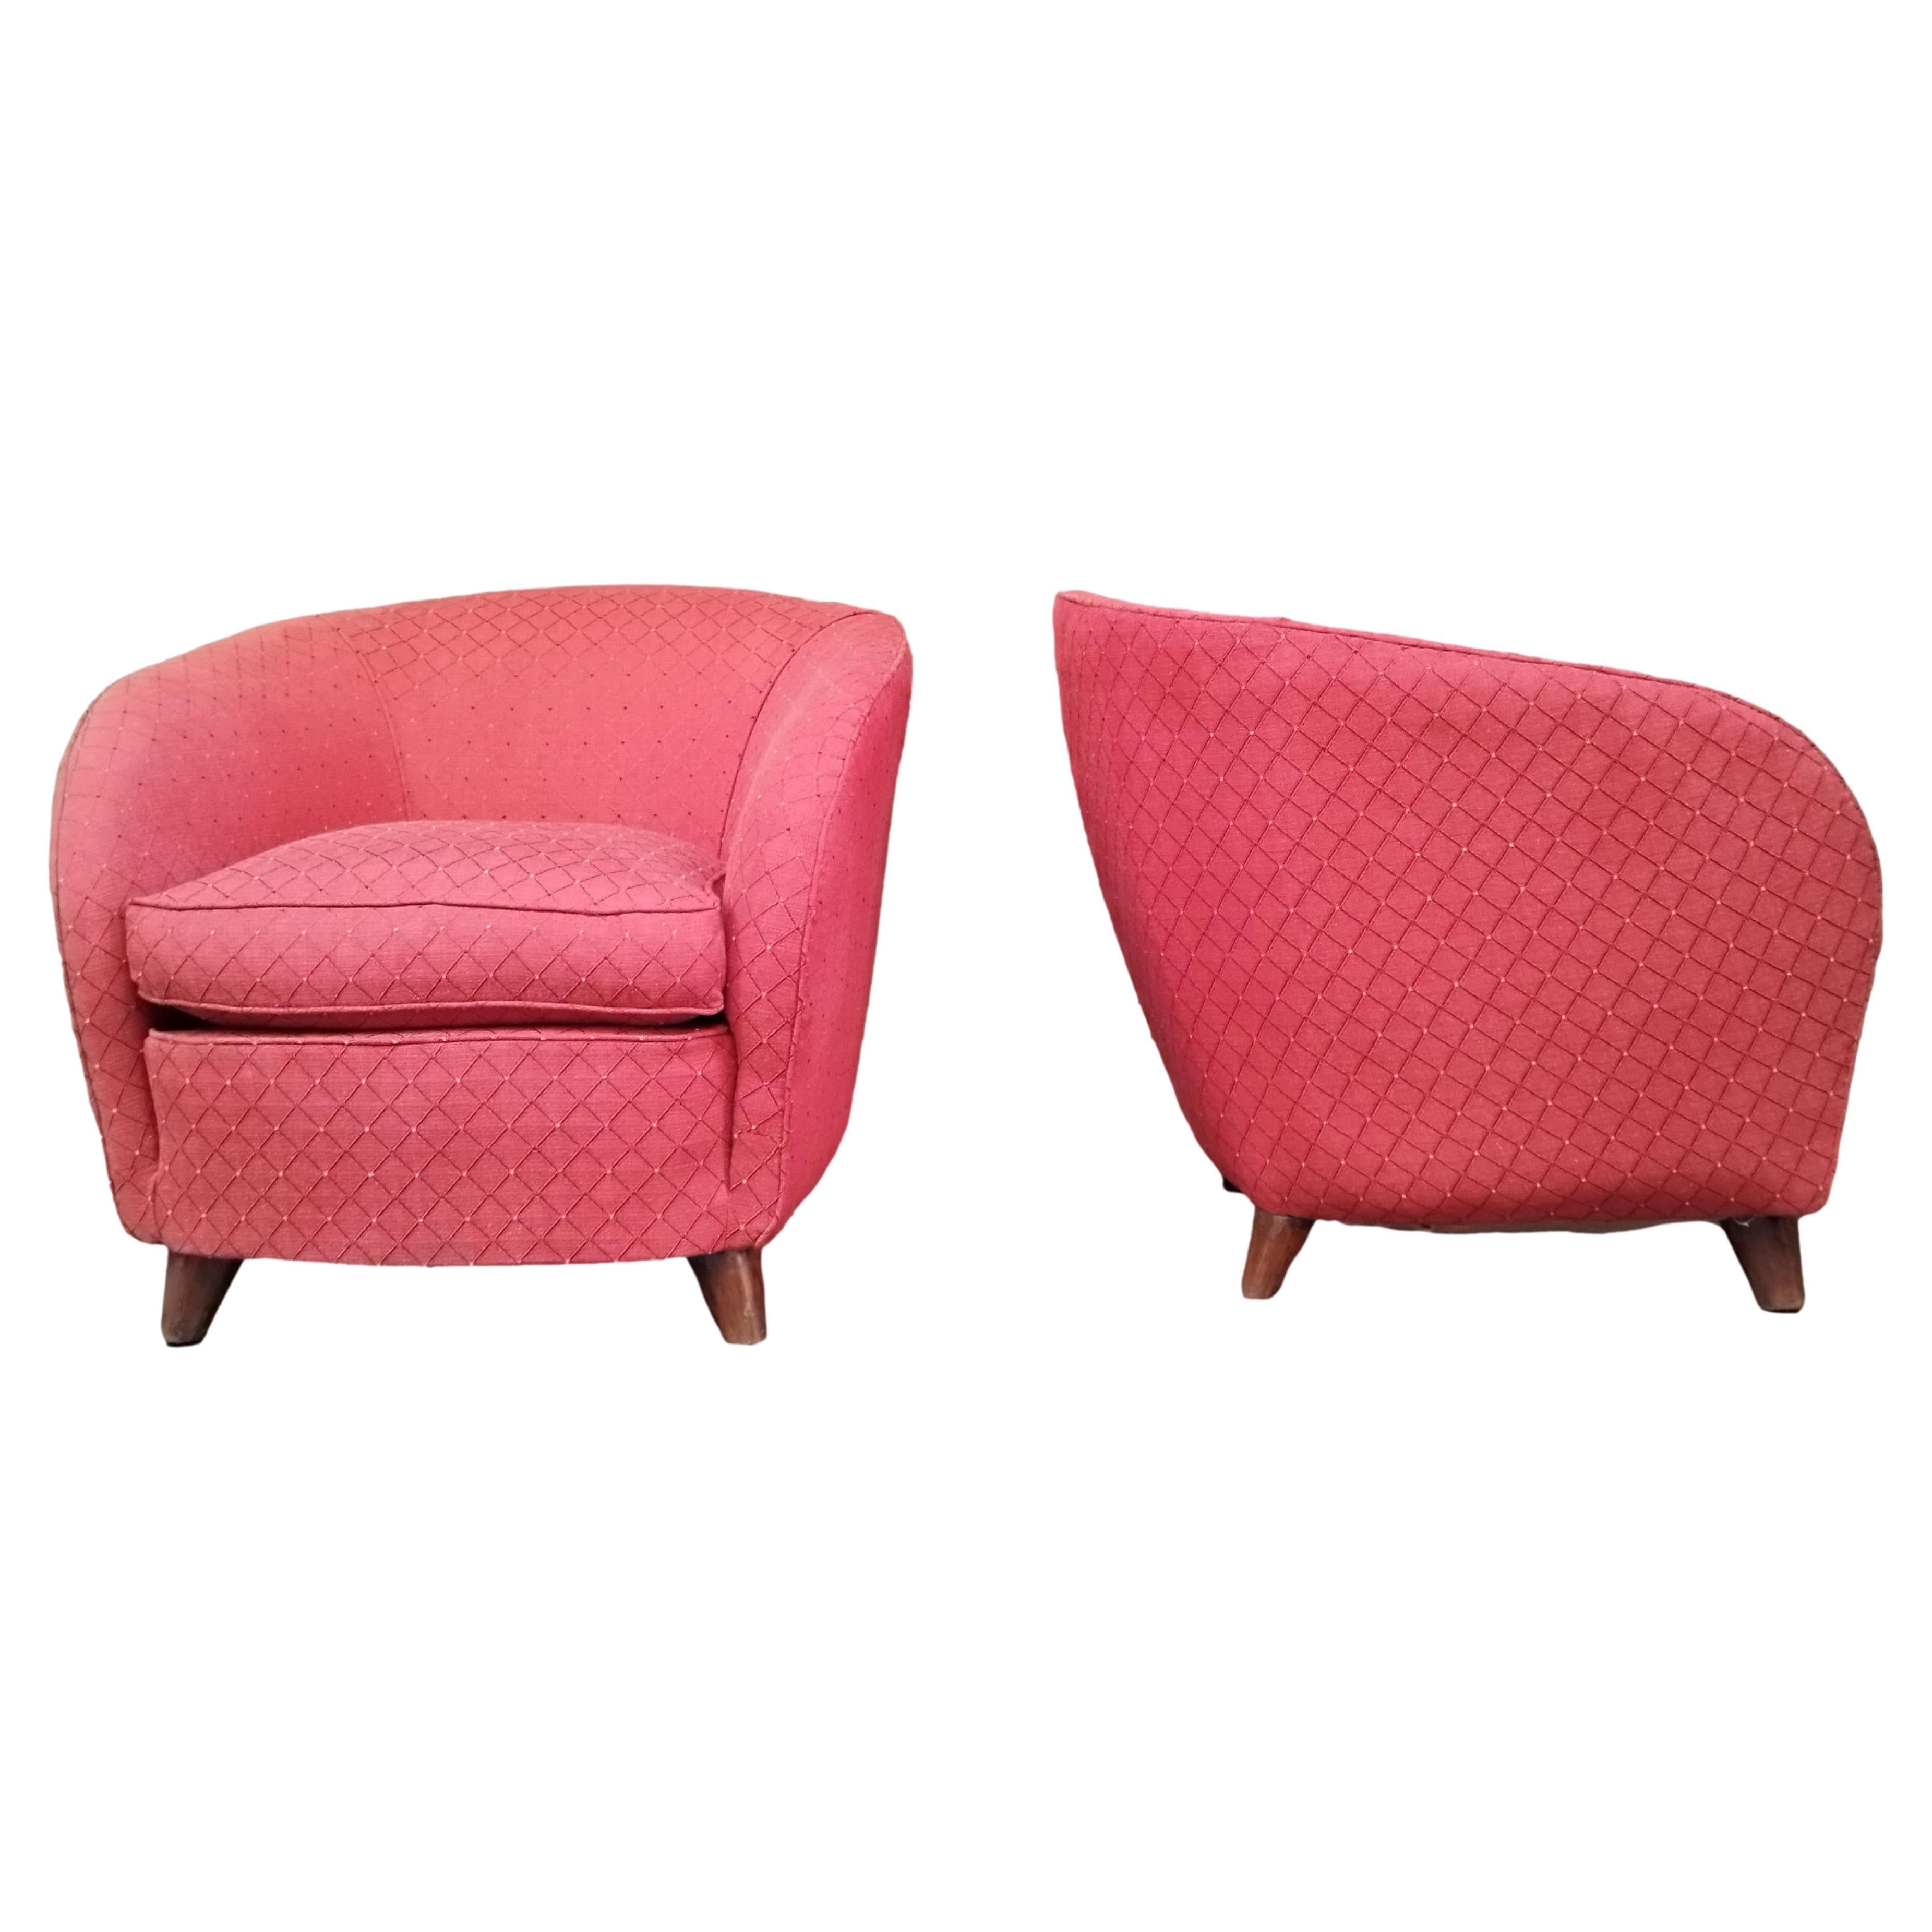 Gio Ponti Attrib. Pair of Red Fabric Armchairs, Italy 1950s